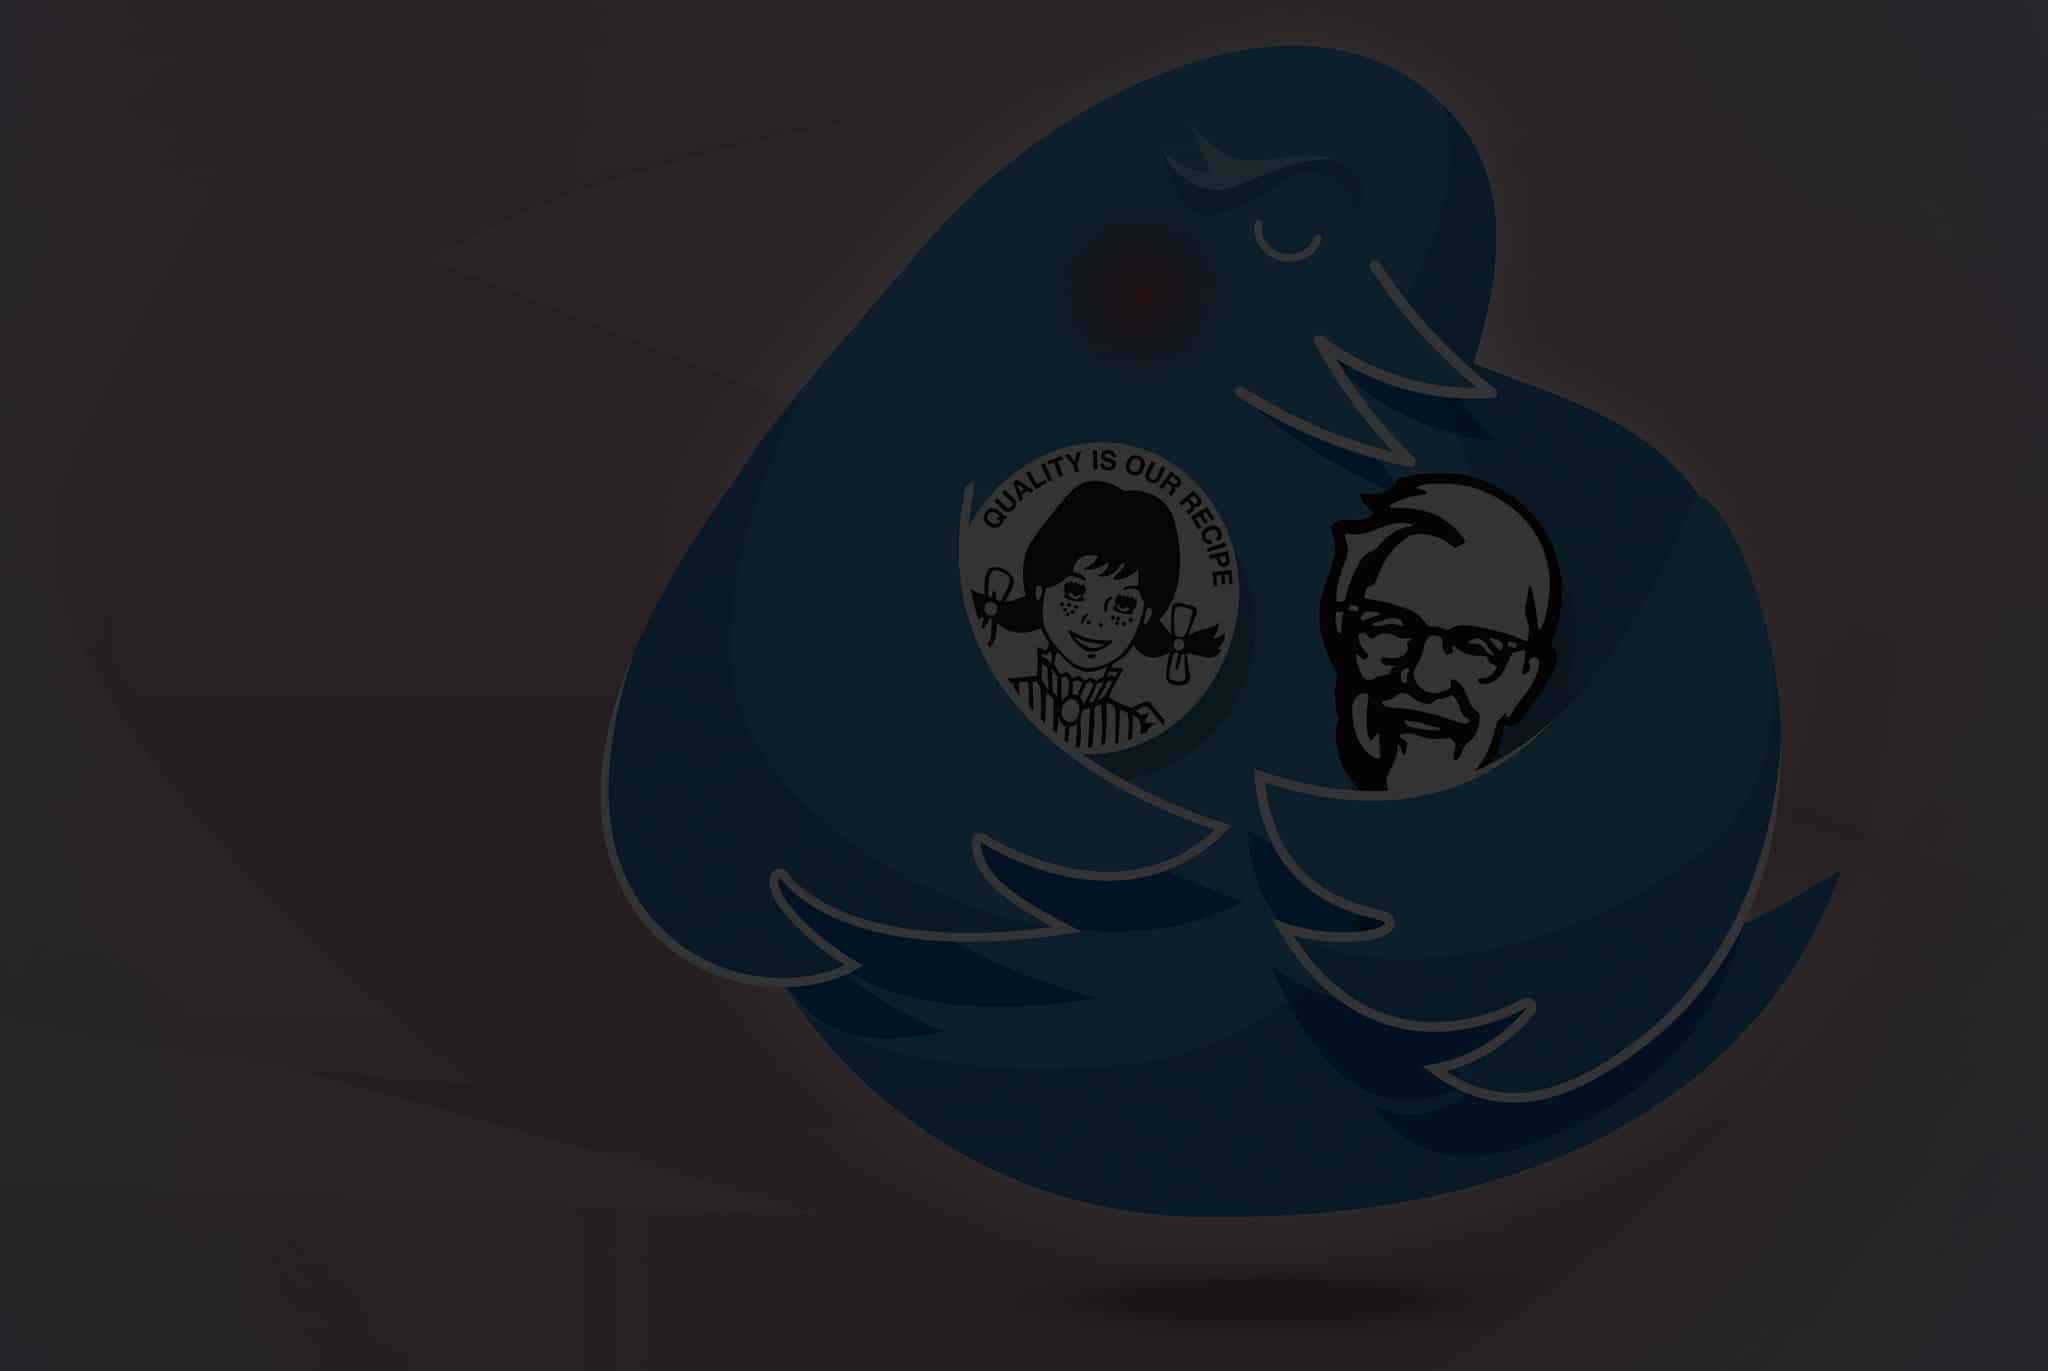 Twitter – Brand Nurturer